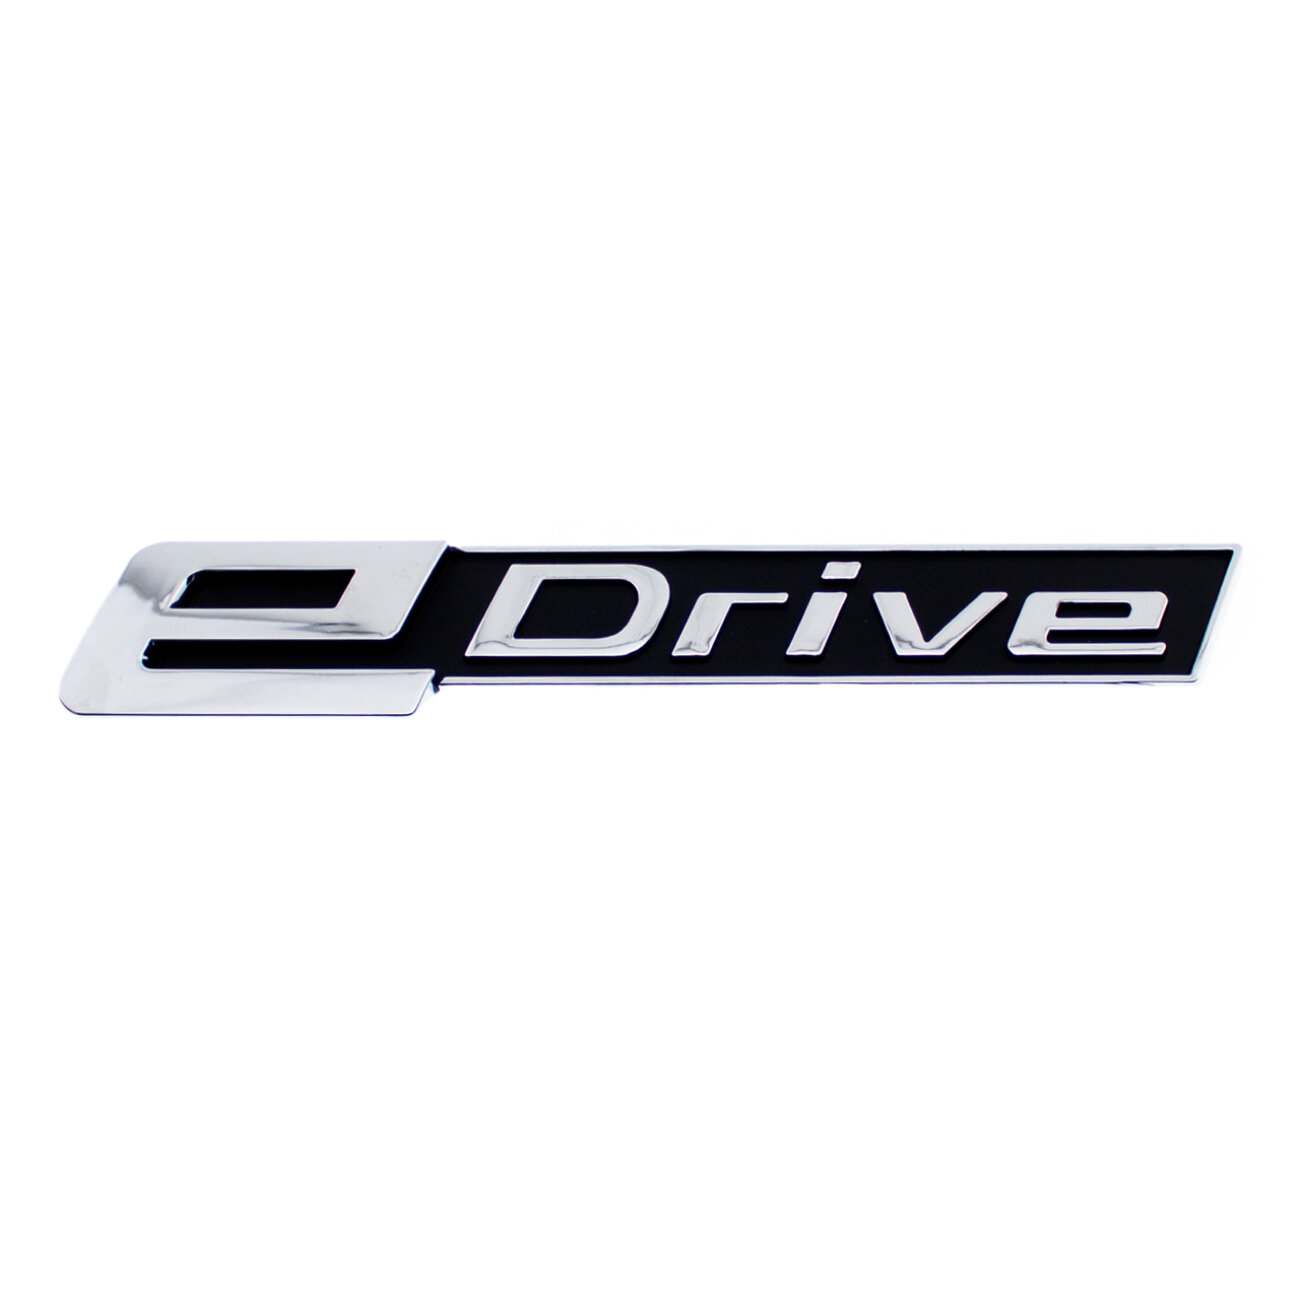 Эмблема E-drive для BMW хром